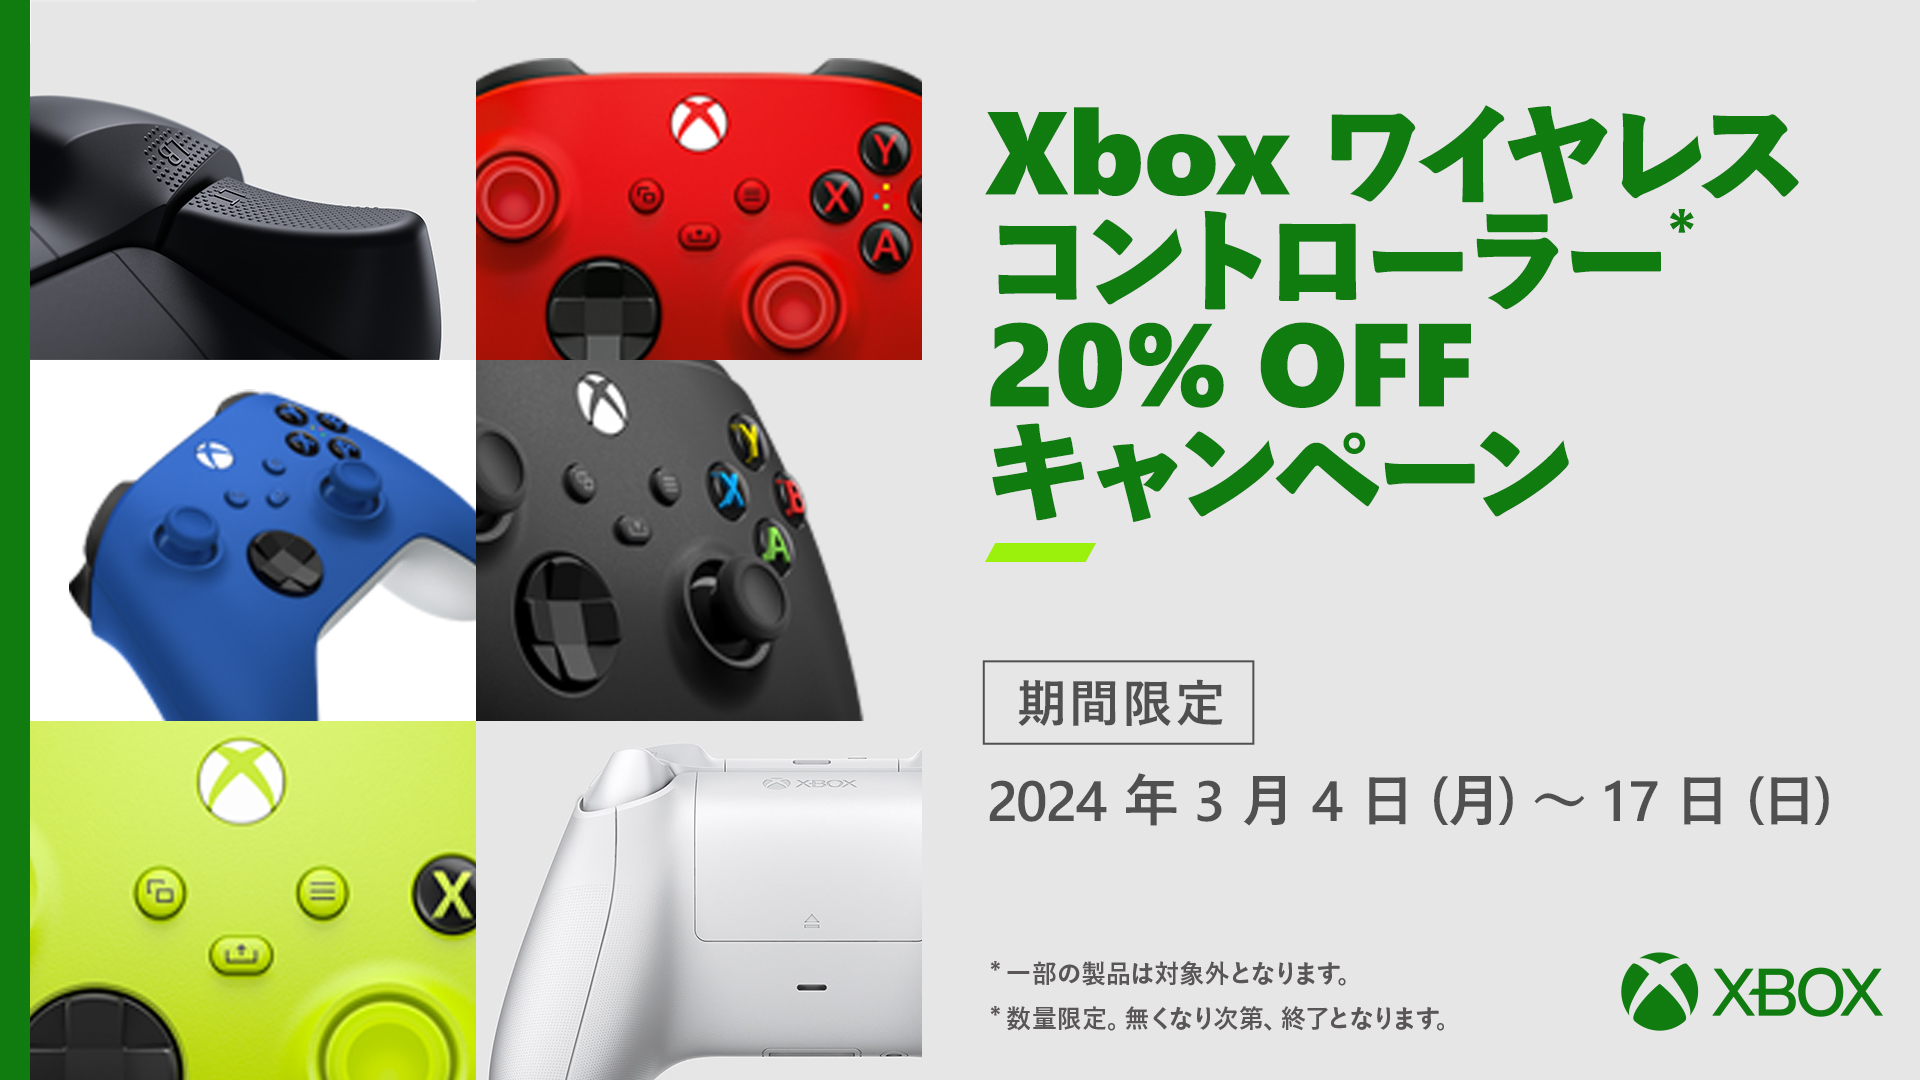 Xbox ワイヤレス コントローラー対象製品 20% オフ キャンペーンを 3